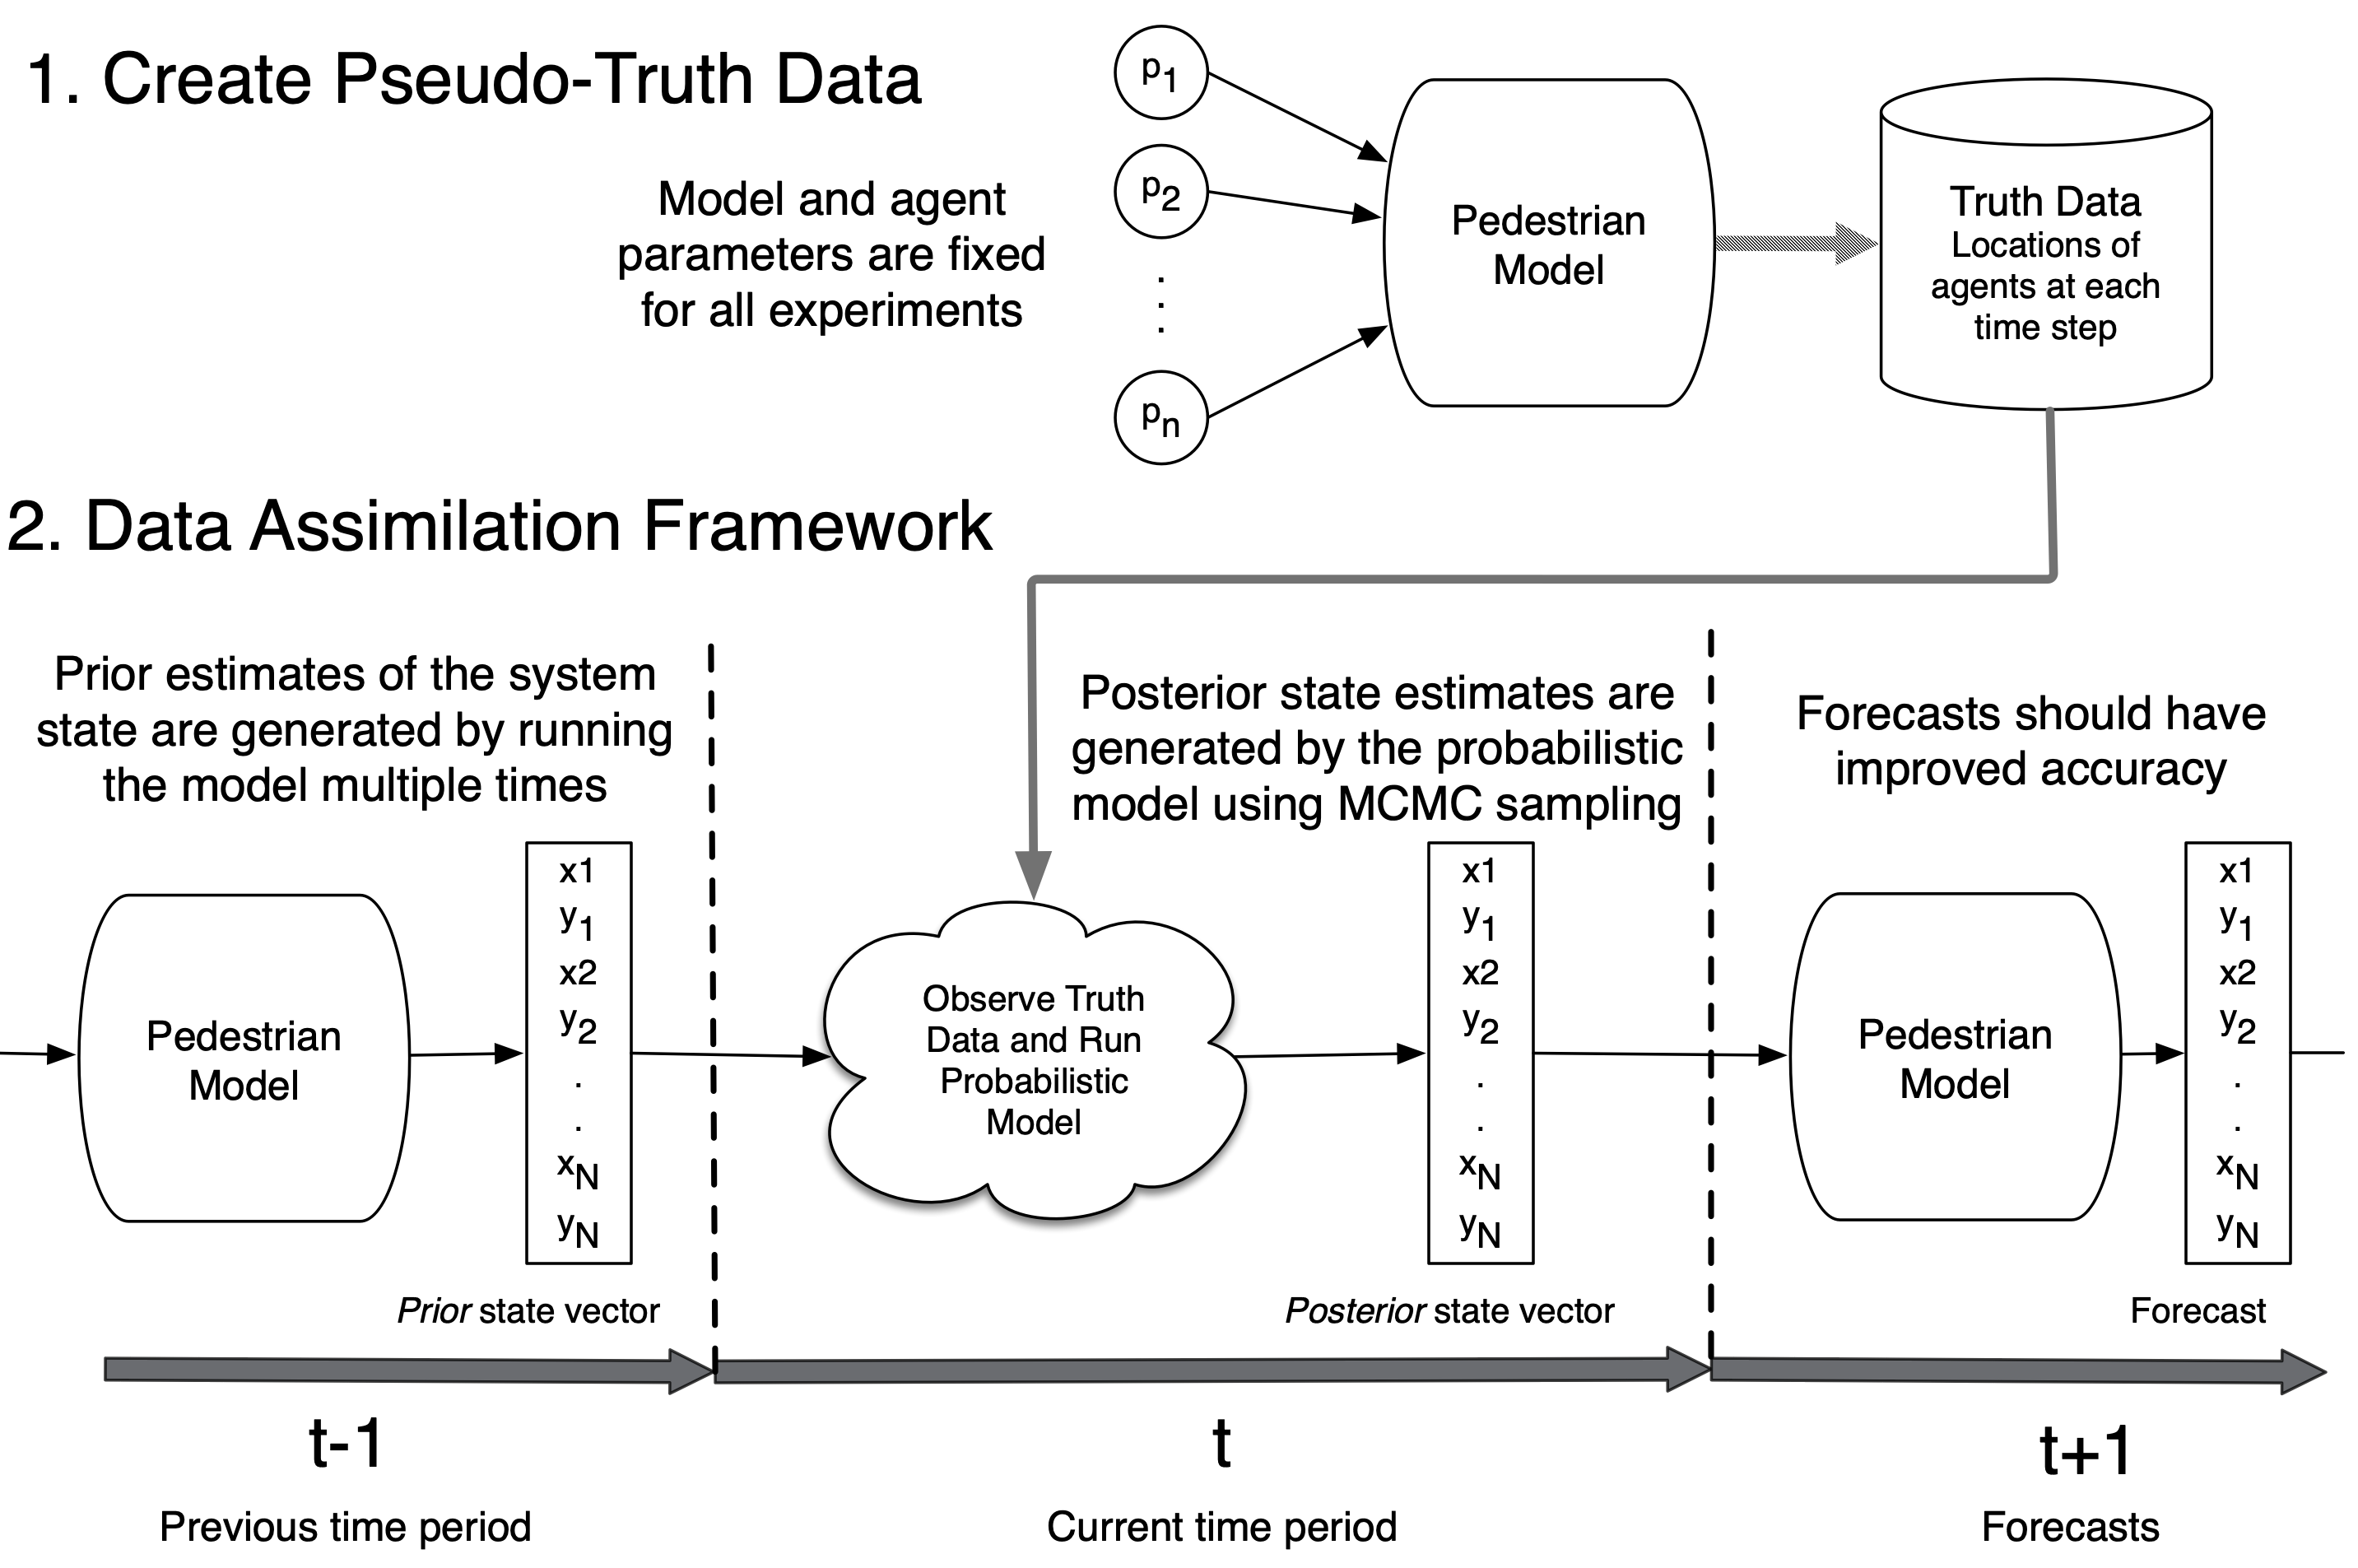 The modelling framework